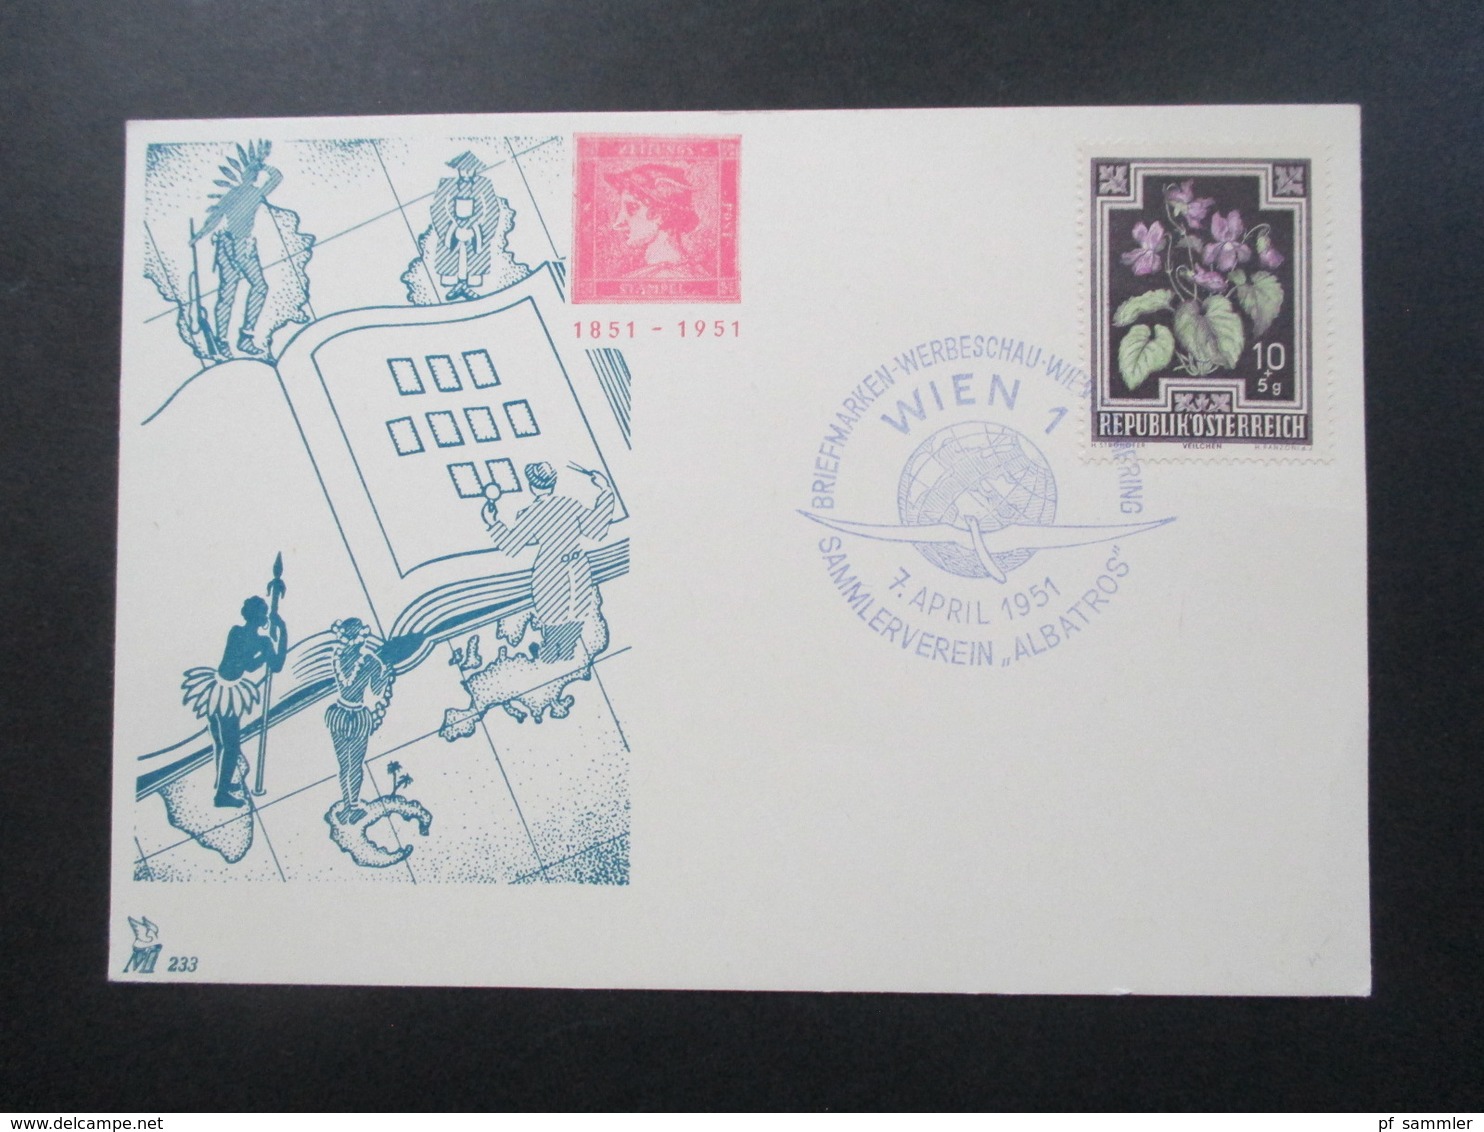 Österreich 1951 Sonderkarte Mit Sonderstempel Briefmarken Werbeschau Wien Sammlerverein Albatros. Roter Merkur - Briefe U. Dokumente